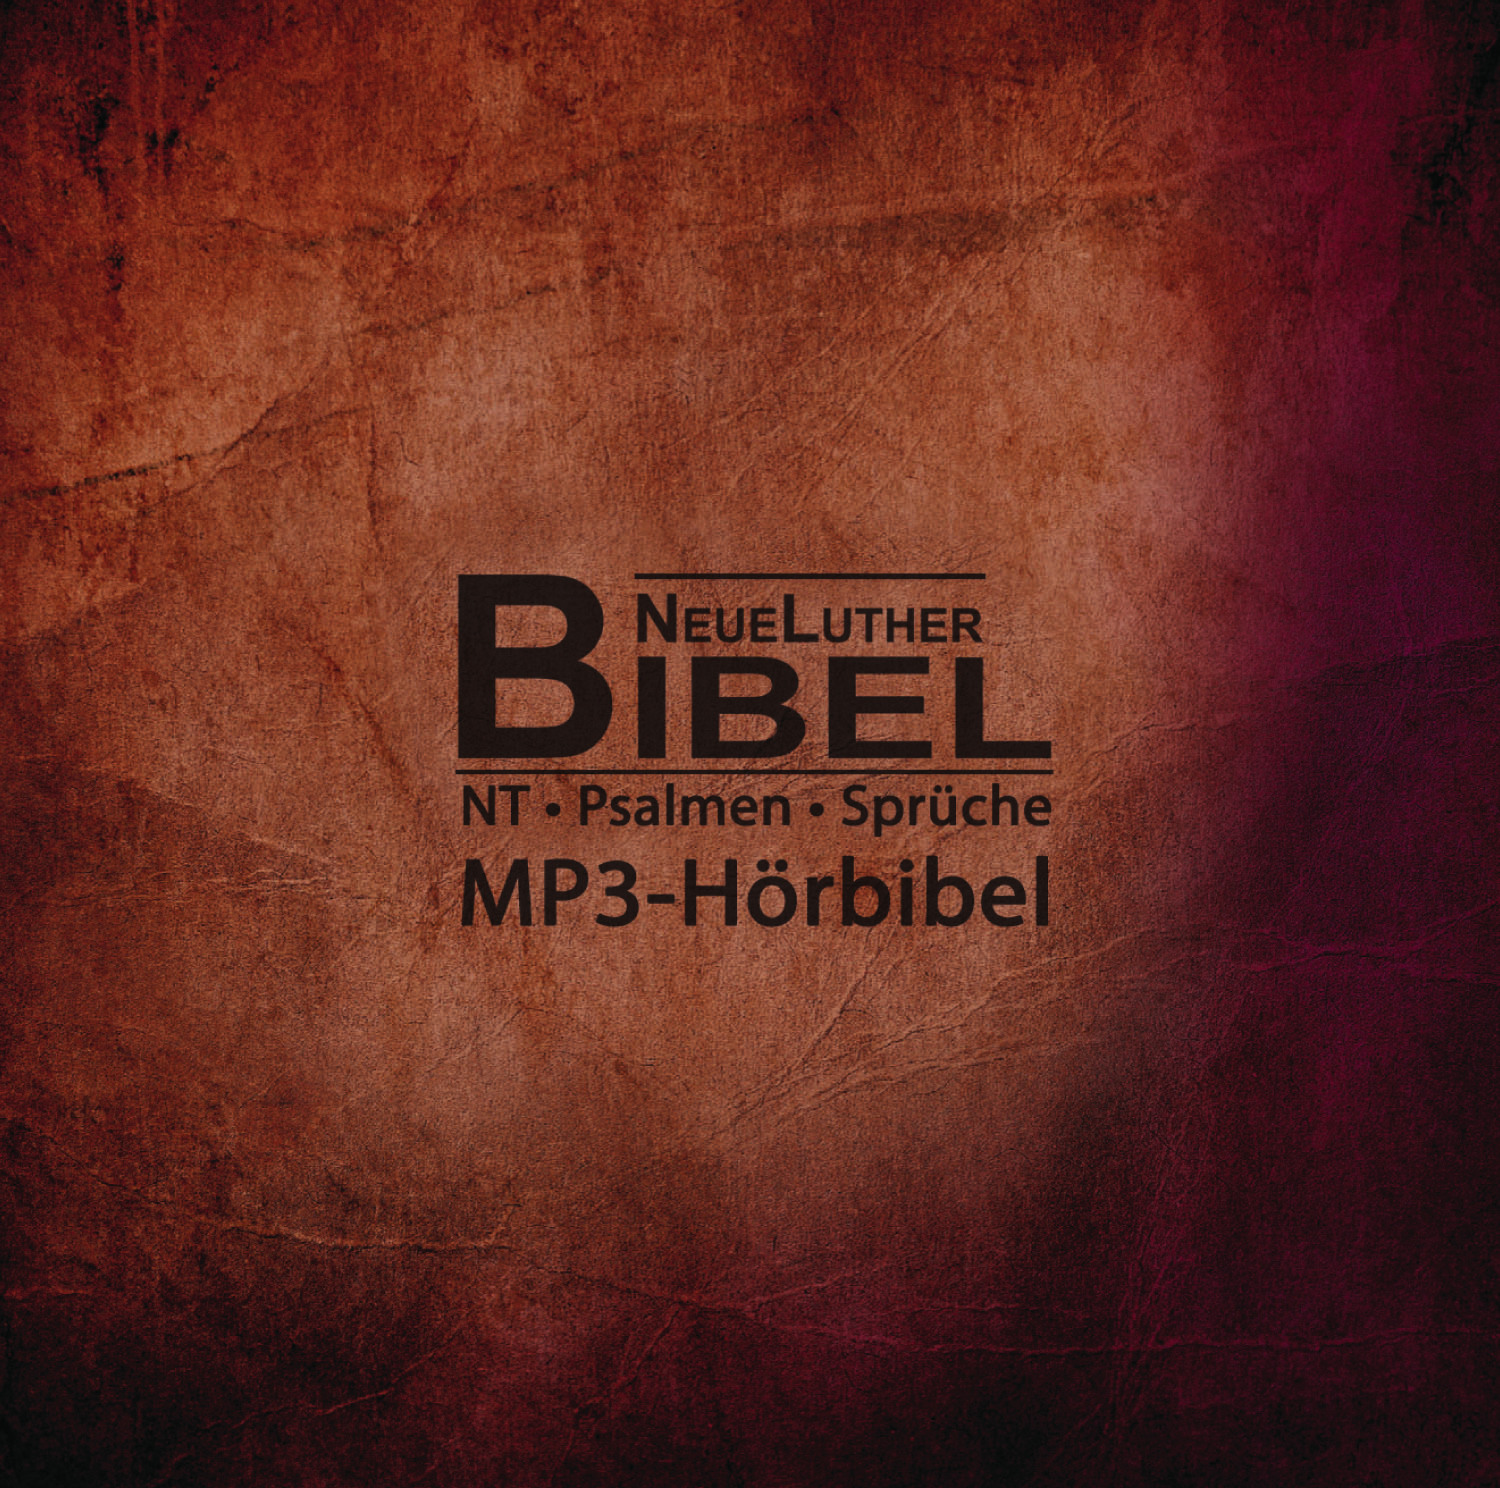 NeueLuther Bibel - Hörbibel (2 MP3-CDs)